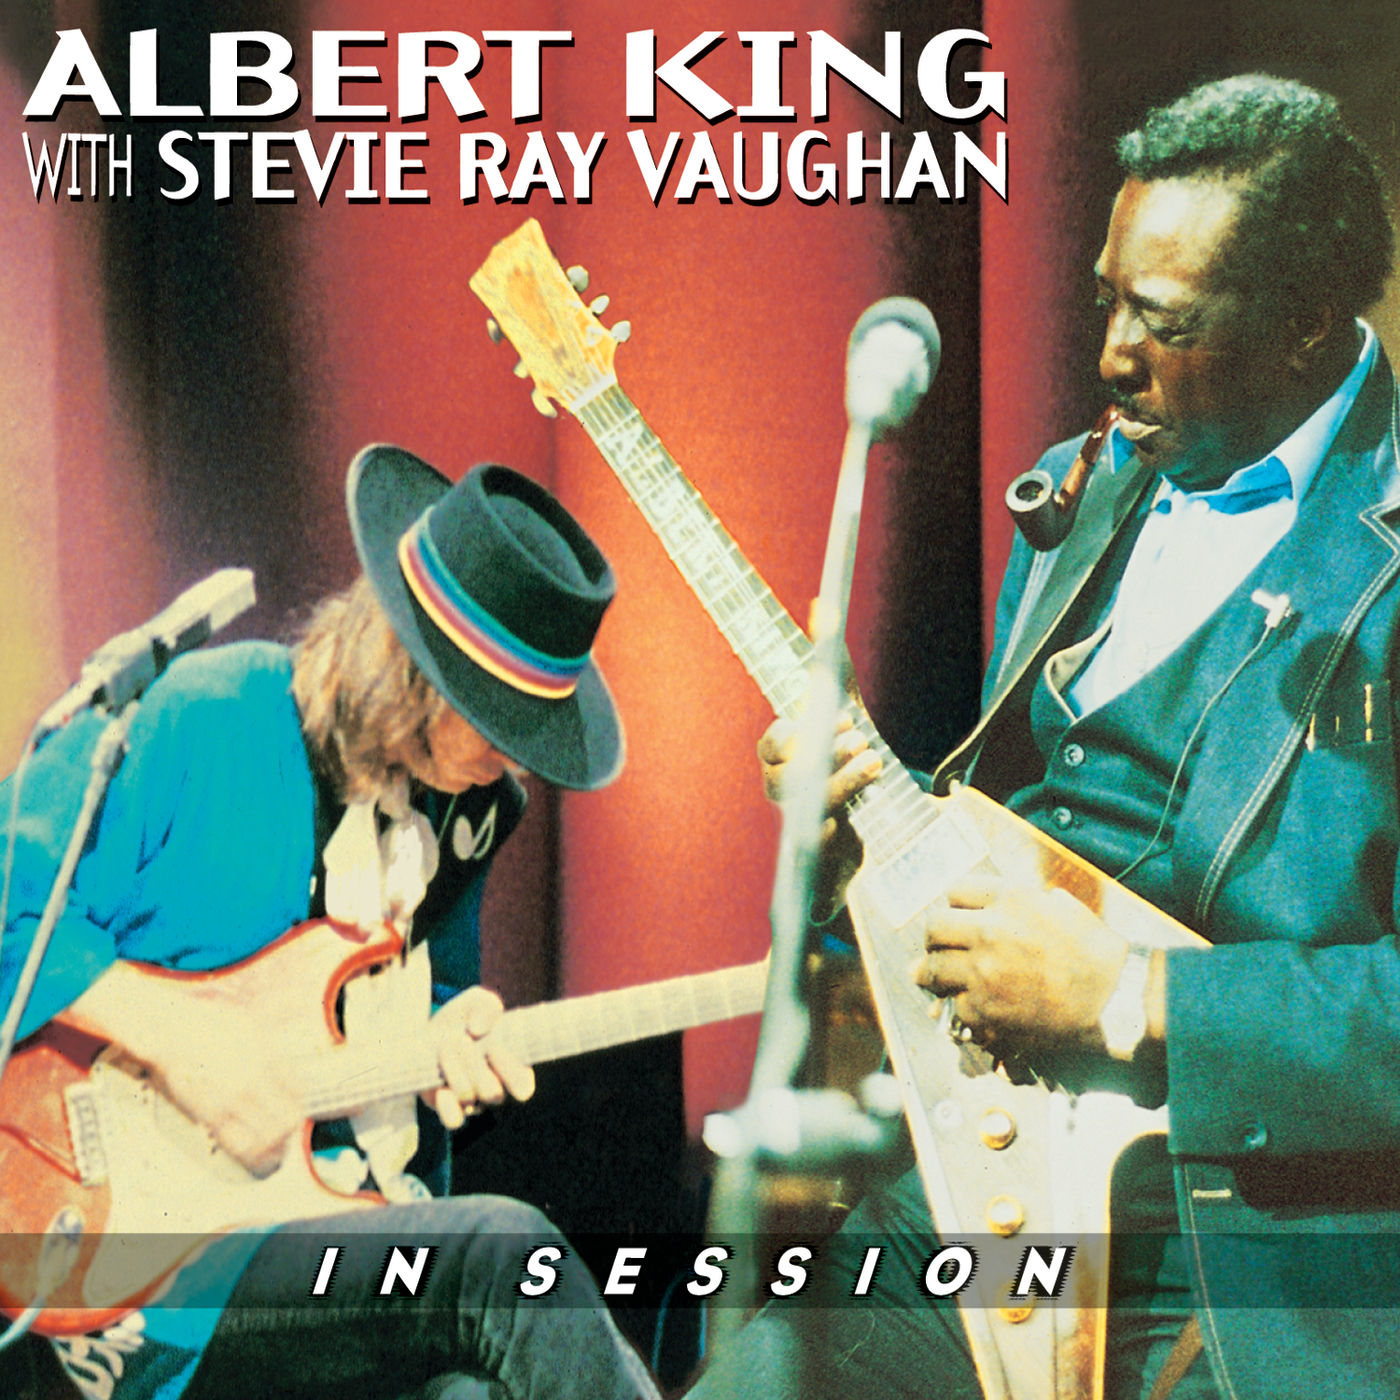 Albert King & Stevie Ray Vaughan – In Session (1999/2015) [FLAC 24bit/192kHz]